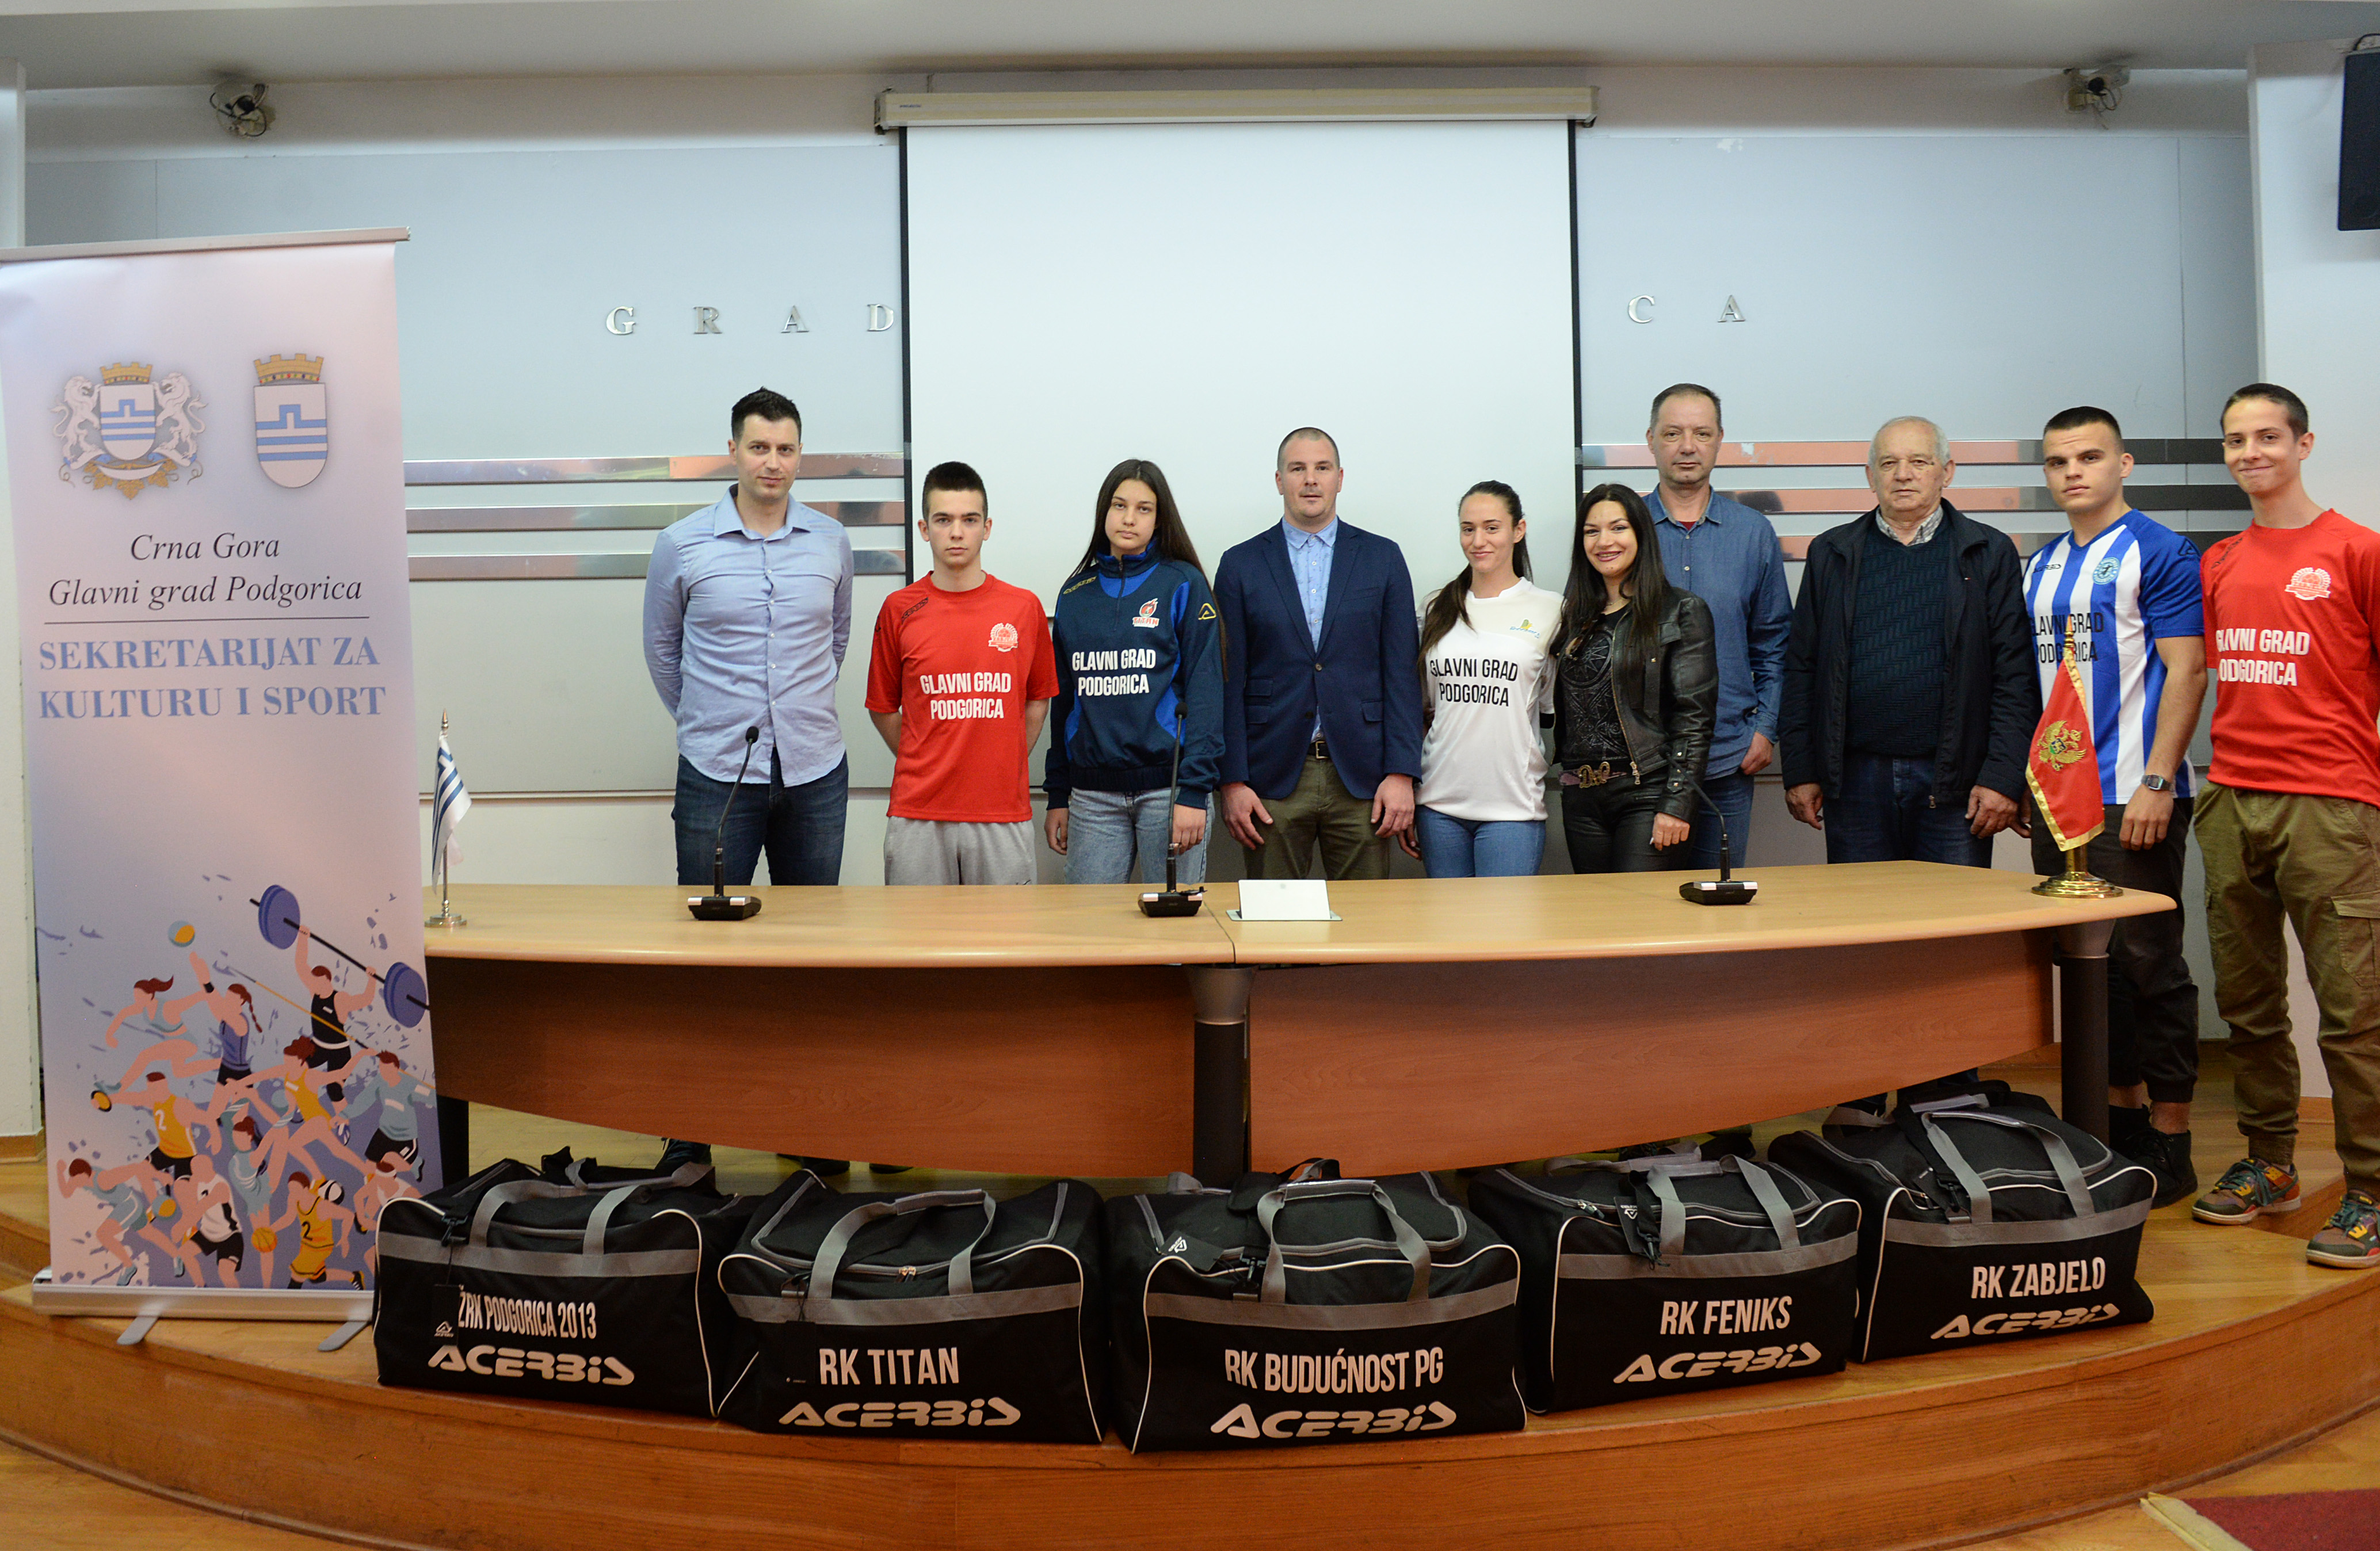 Sekretarijat za kulturu i sport donirao sportsku opremu rukometnim klubovima iz Podgorice